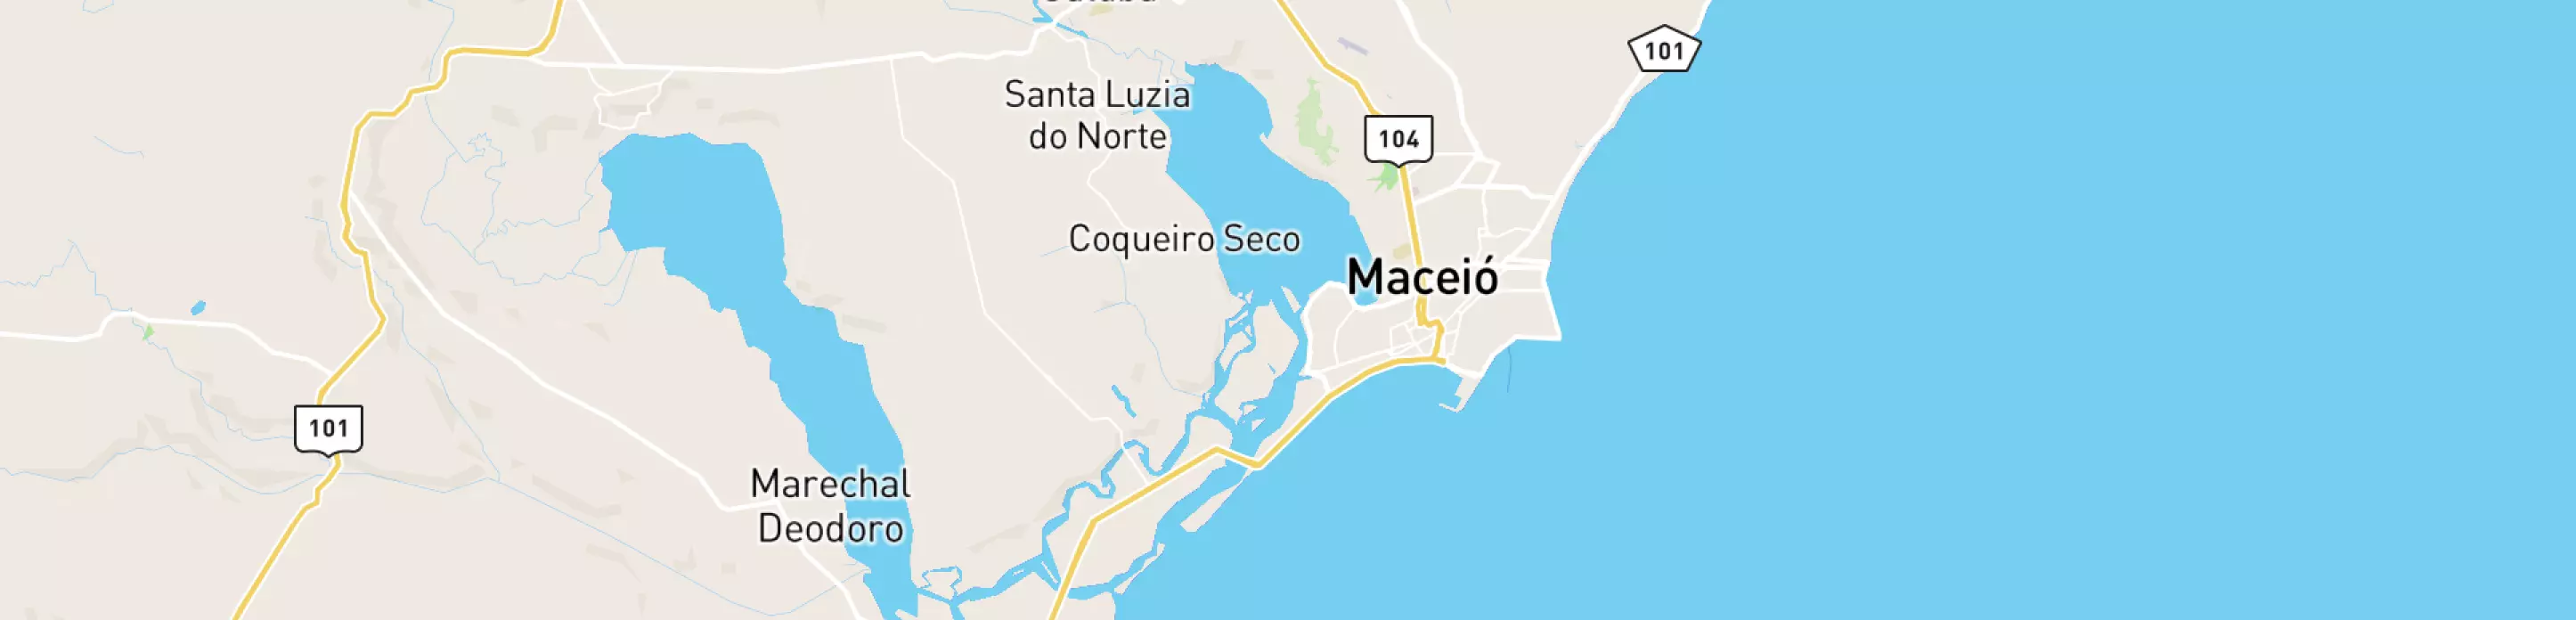 Mapa mostrando localização do terminal logístico de Maceió, da Petrobras.